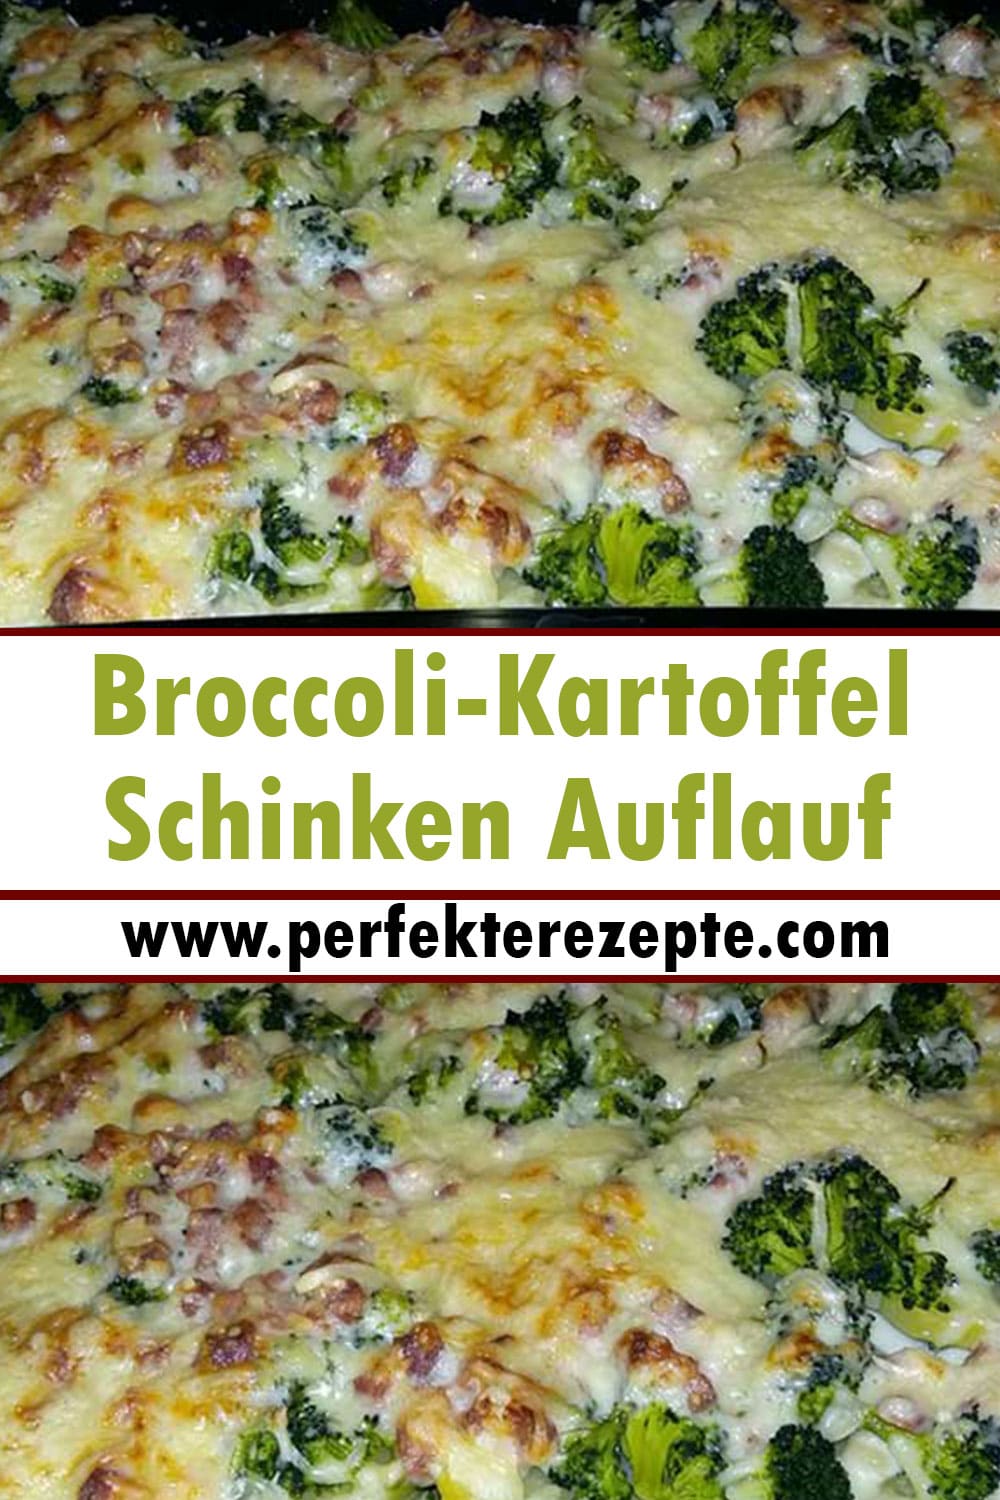 Broccoli-Kartoffel-Schinken Auflauf Rezept